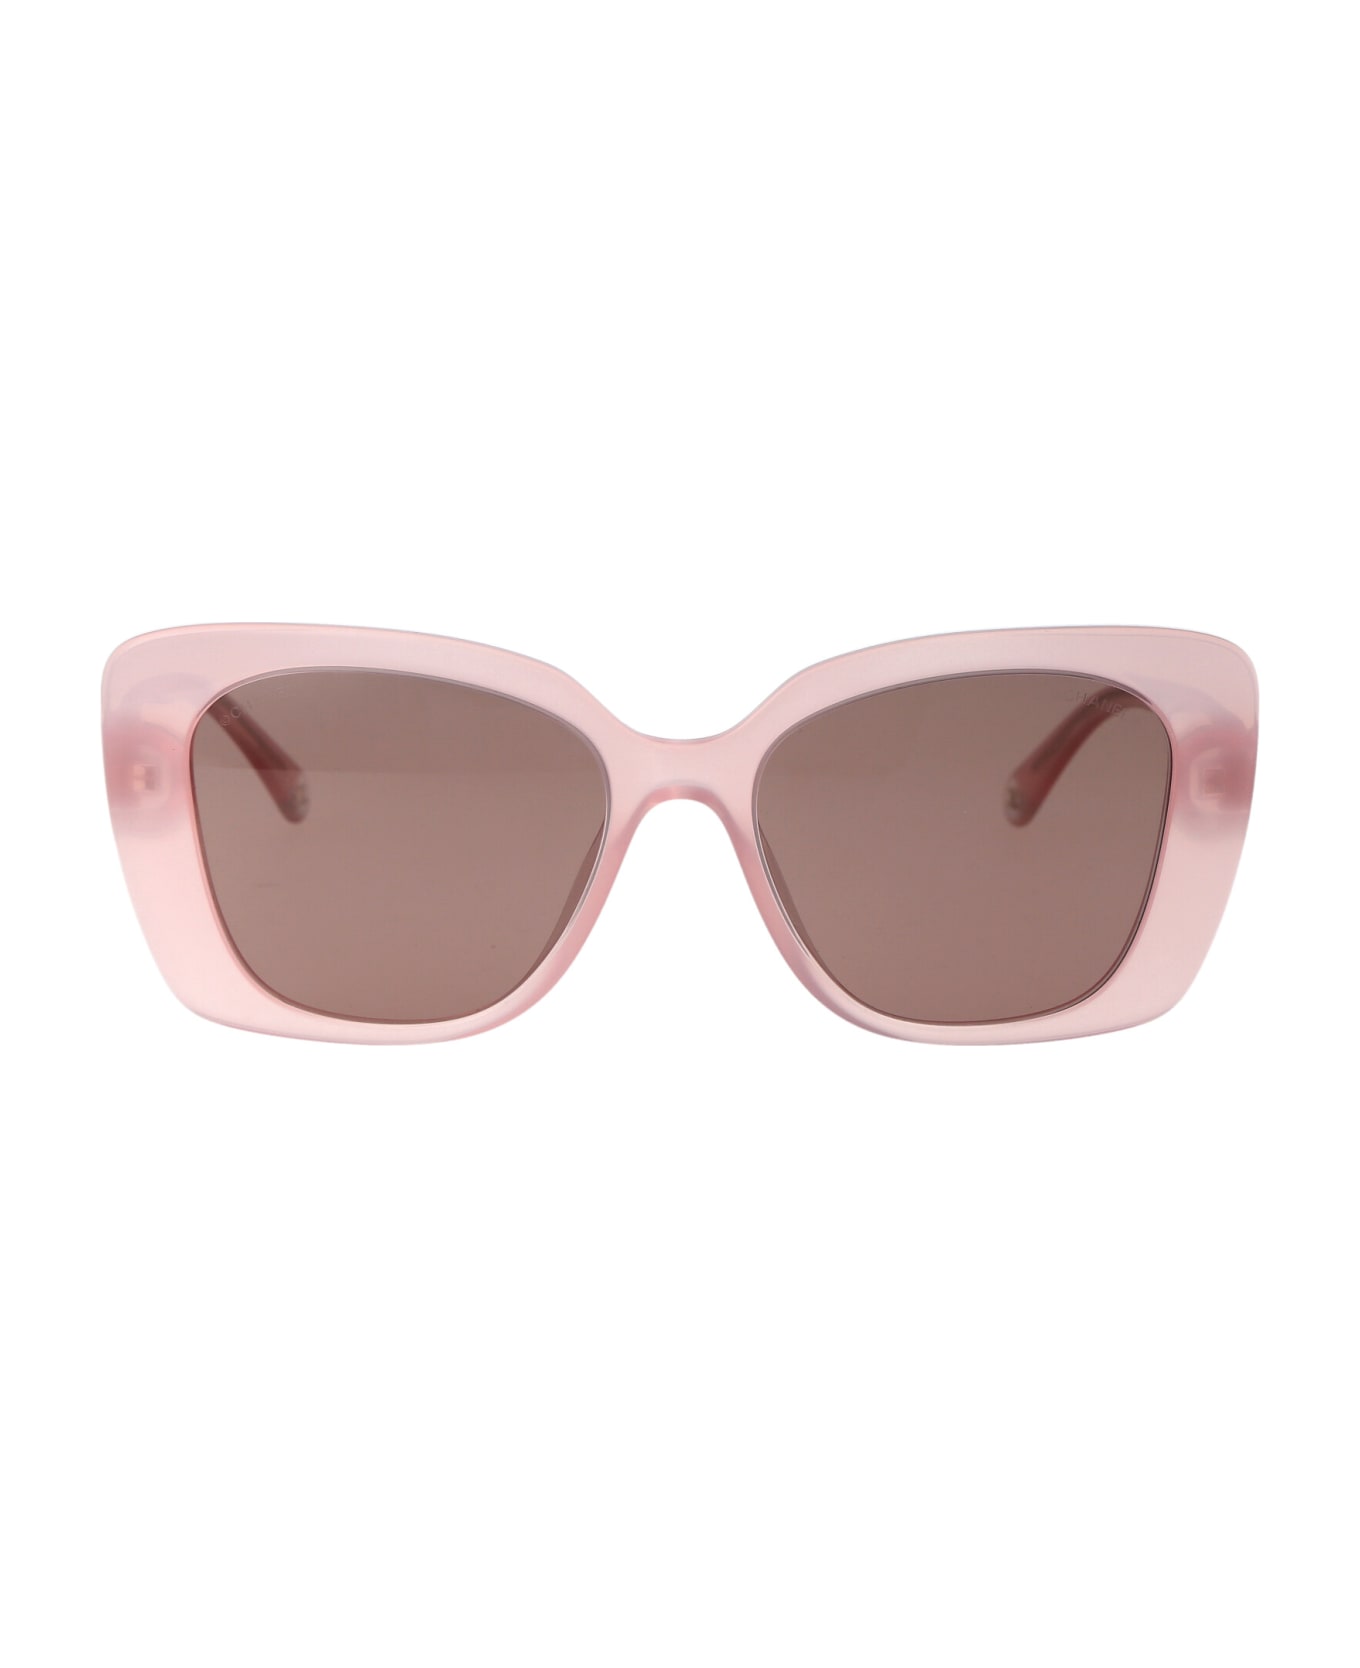 Chanel 0ch5504 Sunglasses - 17334R PINK サングラス